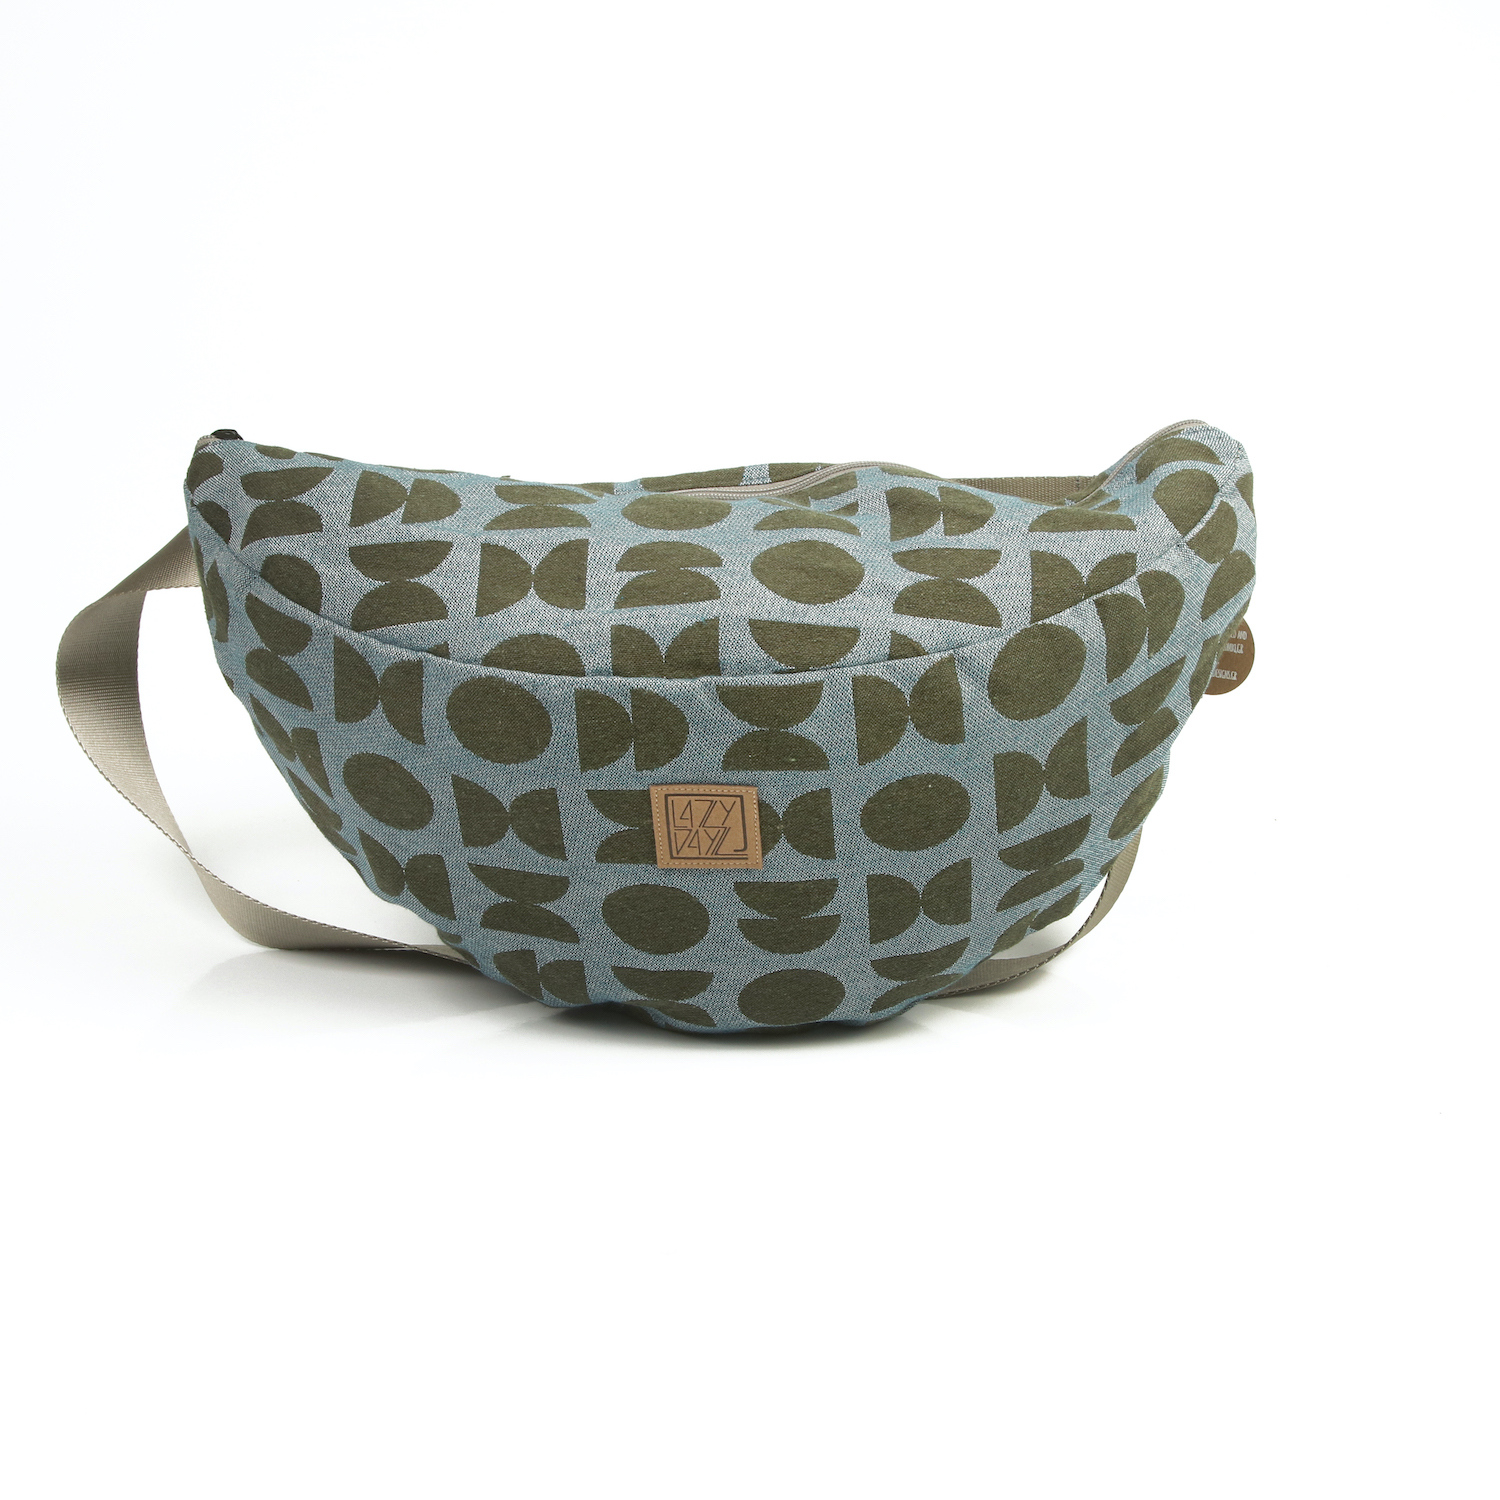 LazyDayz-Designs-Backpack-γυναικείο body bag – bum bag χειροποίητο bn04